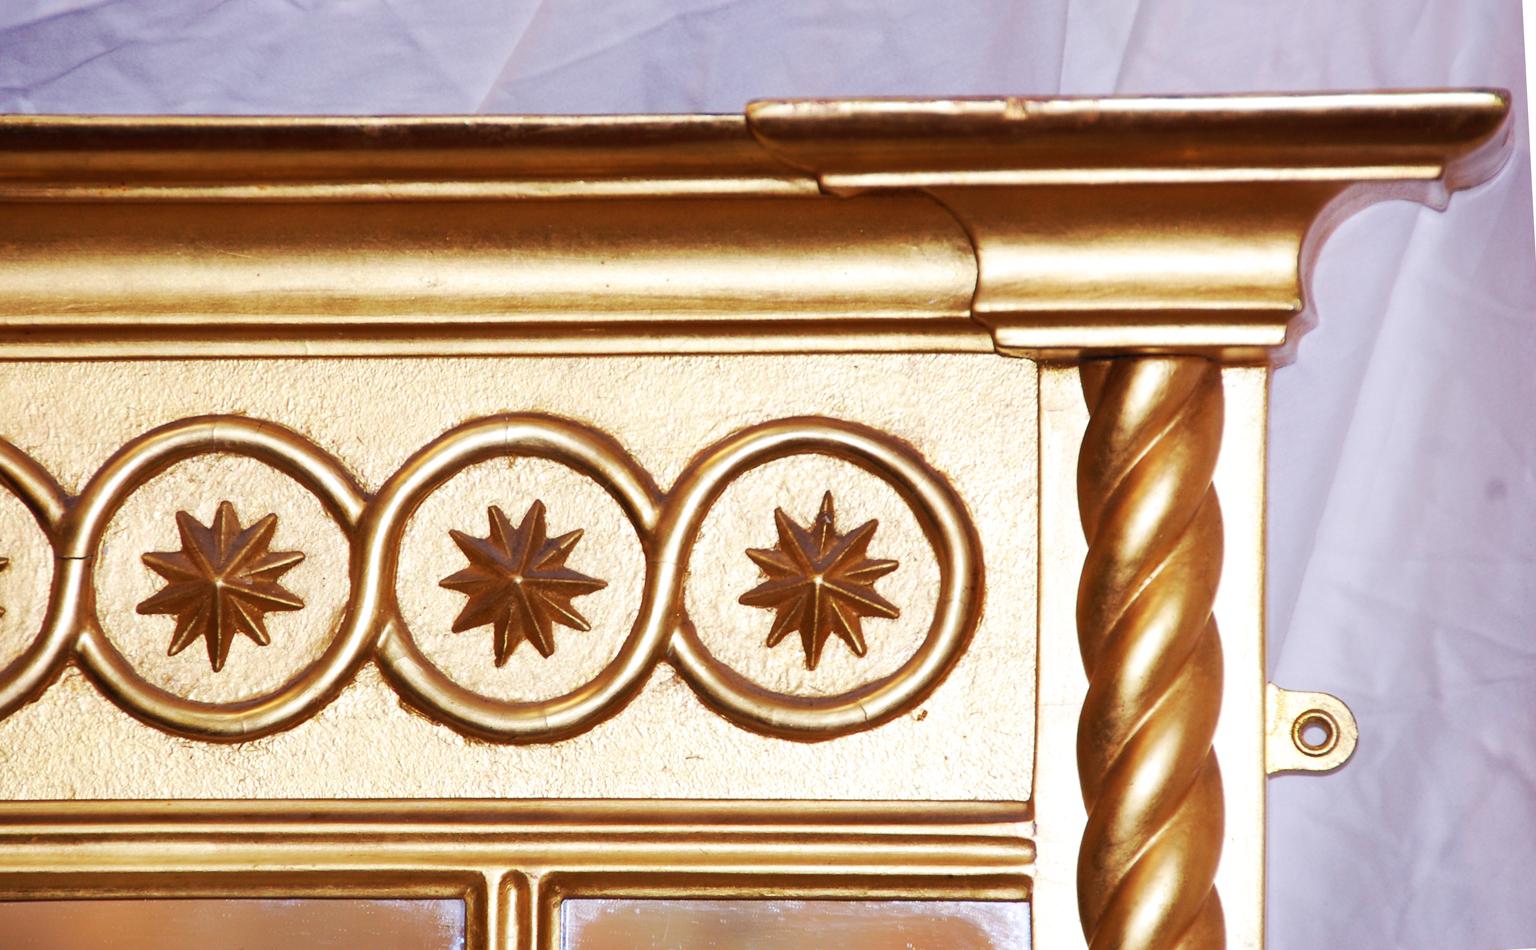 Englischer Regency-Spiegel aus vergoldetem Holz in dreiteiliger Form mit Gerstenkornsäulen. Der Fries besteht aus einer Reihe sich wiederholender Sterne in Kreisen unter einem kühnen Gesims. Das Gesims, der Fries und die Säulen verleihen diesem